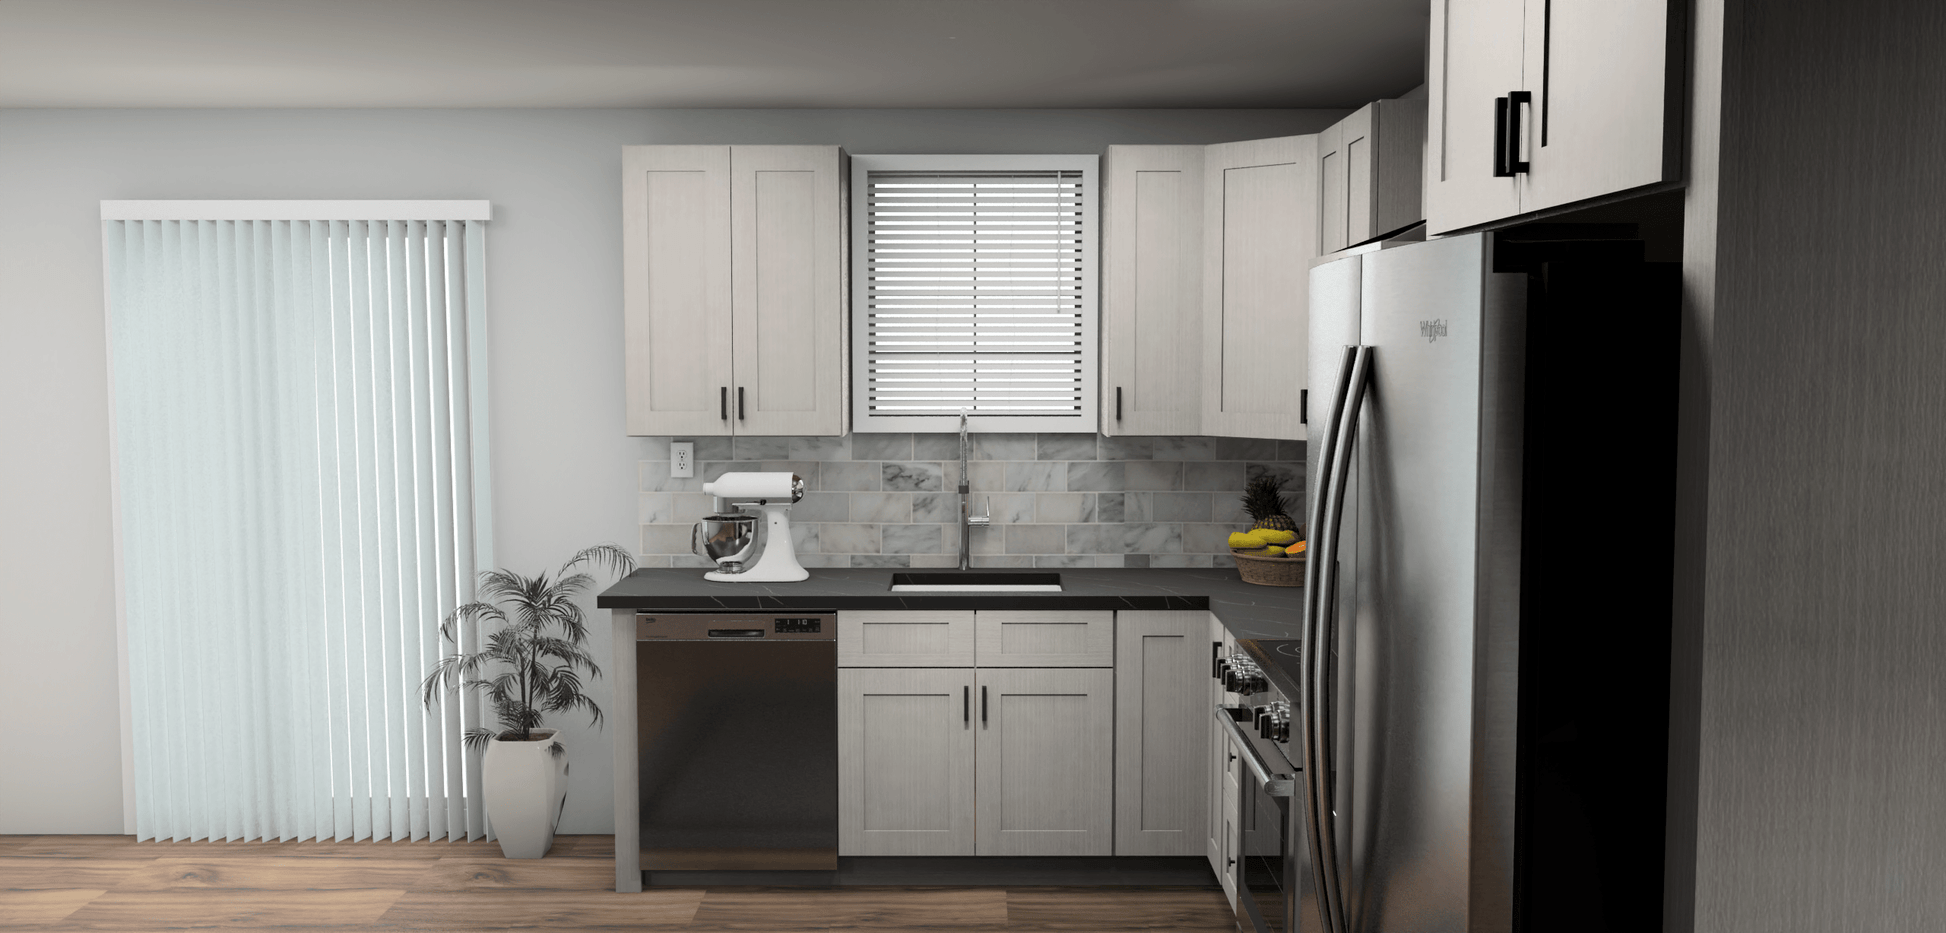 Fabuwood Allure Galaxy Horizon 8 x 13 L Shaped Kitchen Side Layout Photo